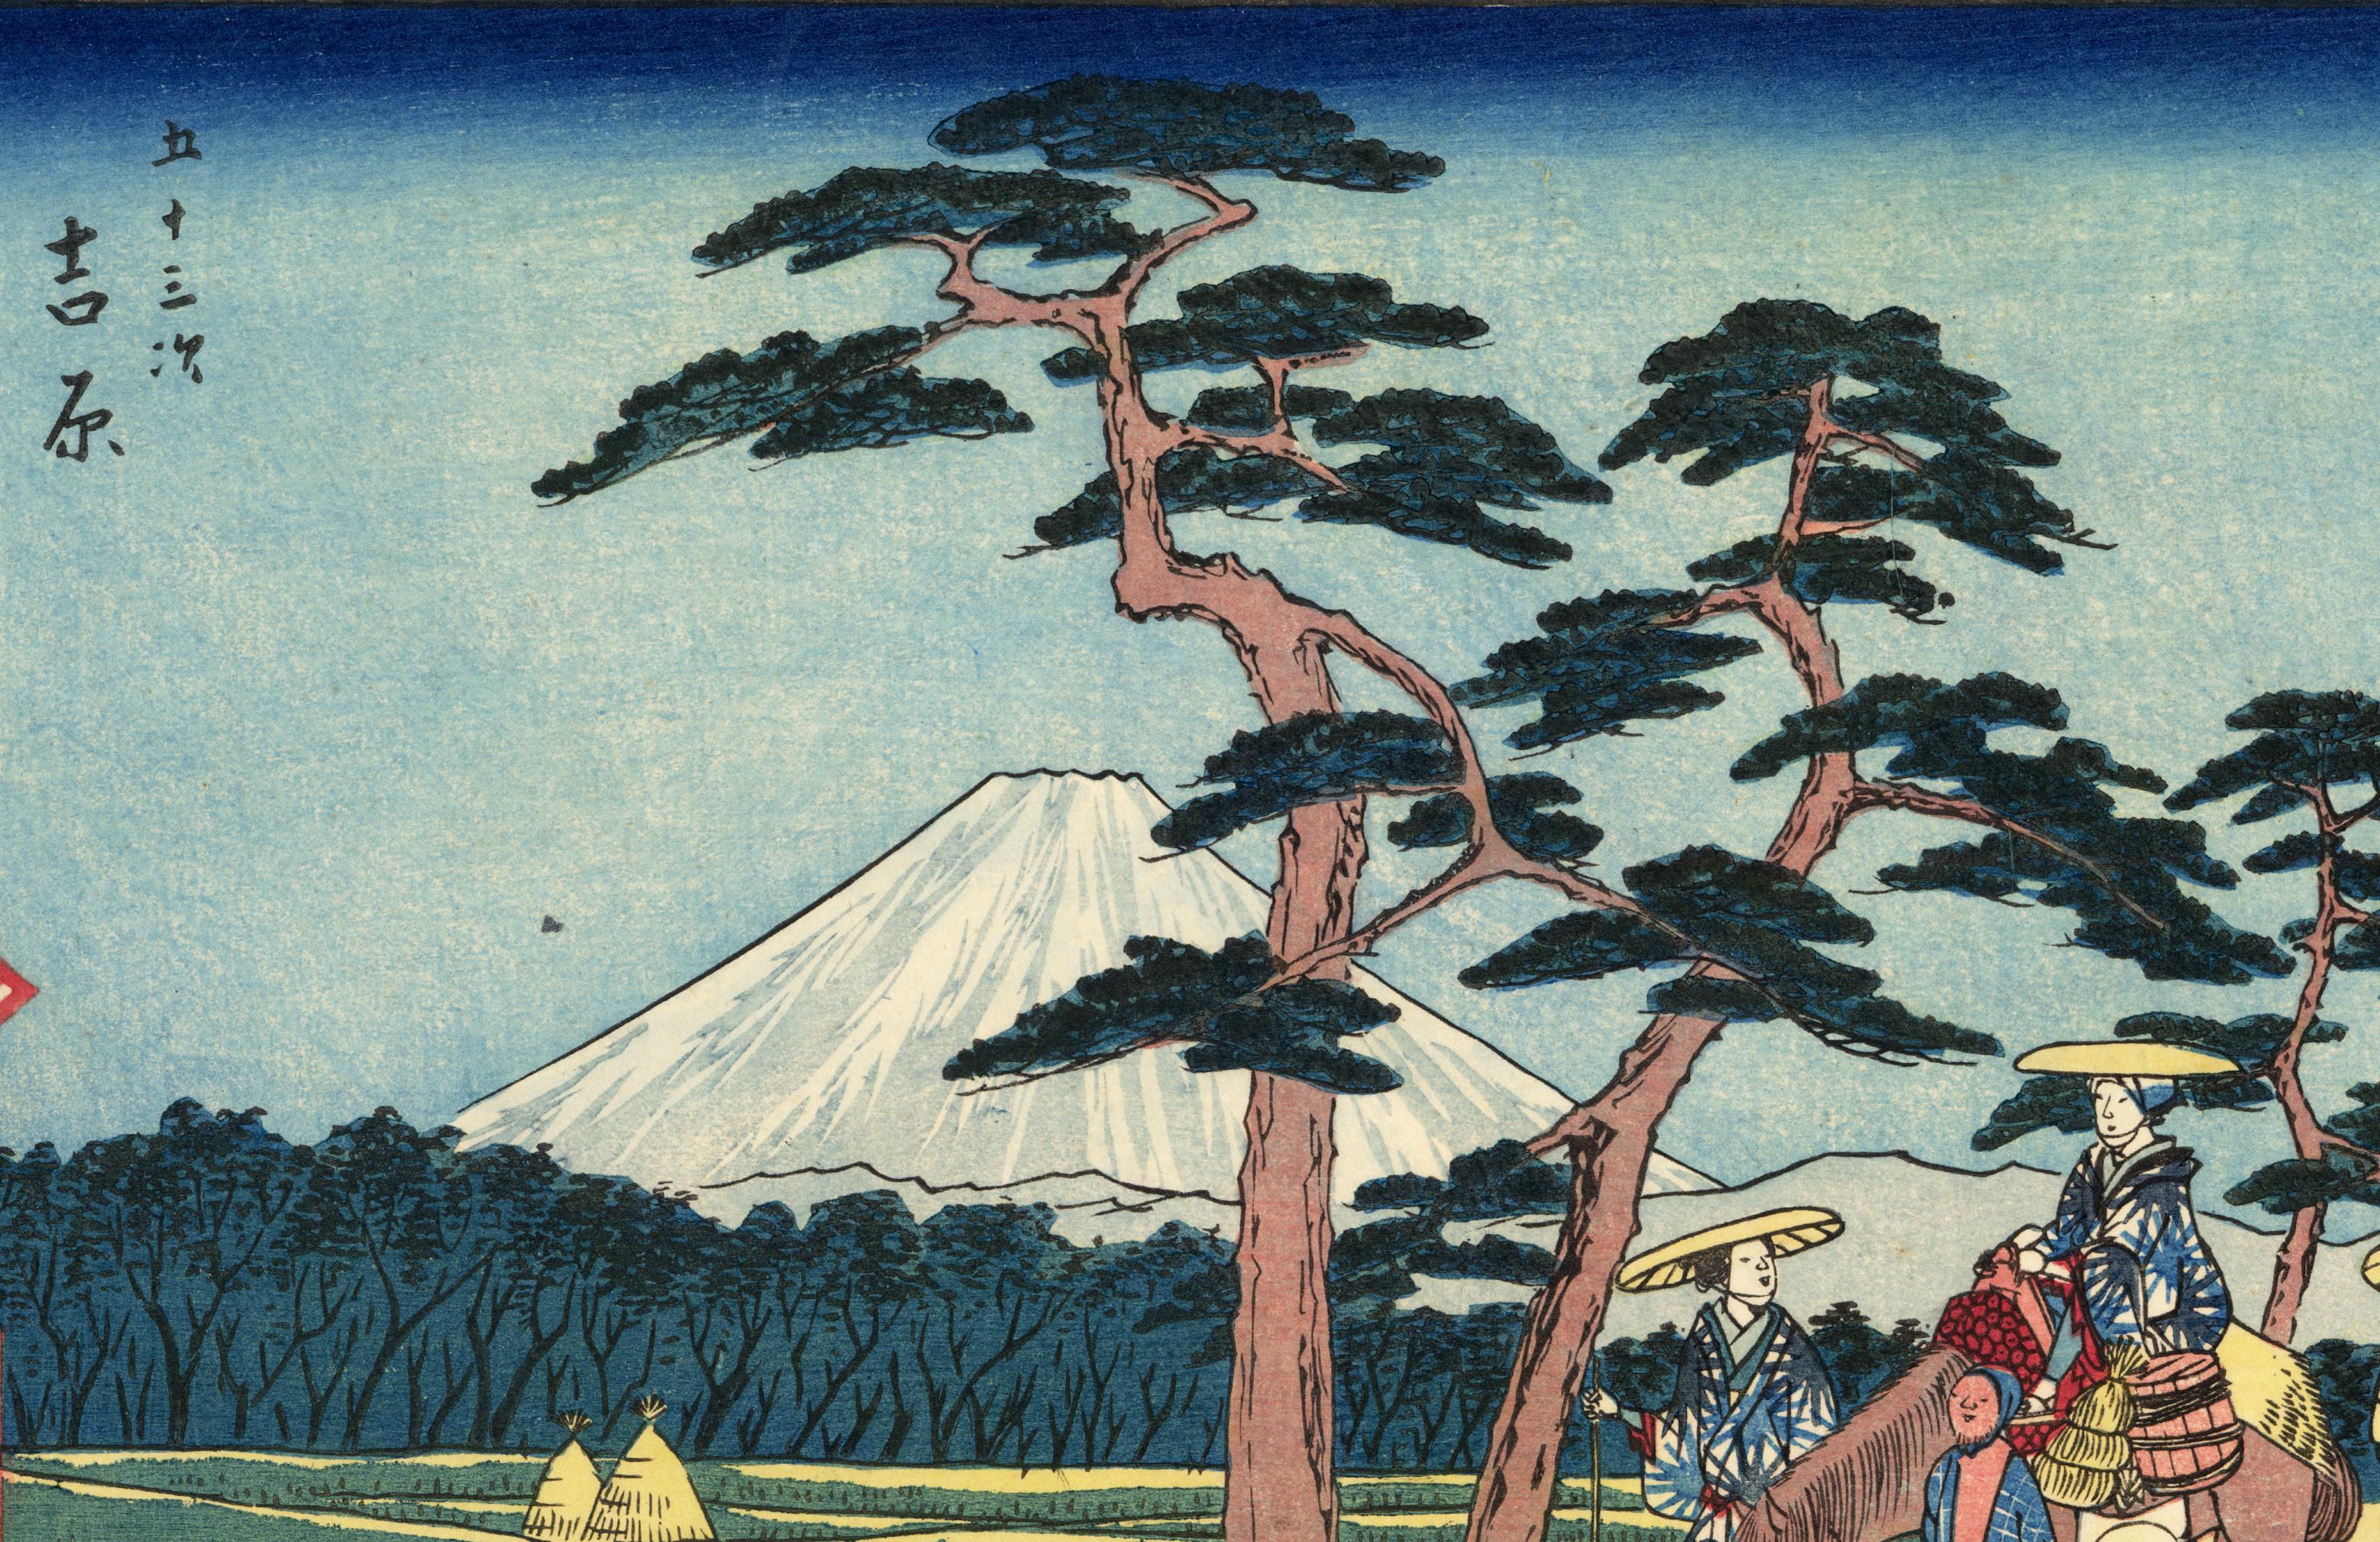 Station Yoshiwara from the Reisho Tokaido - Print by Utagawa Hiroshige (Ando Hiroshige)